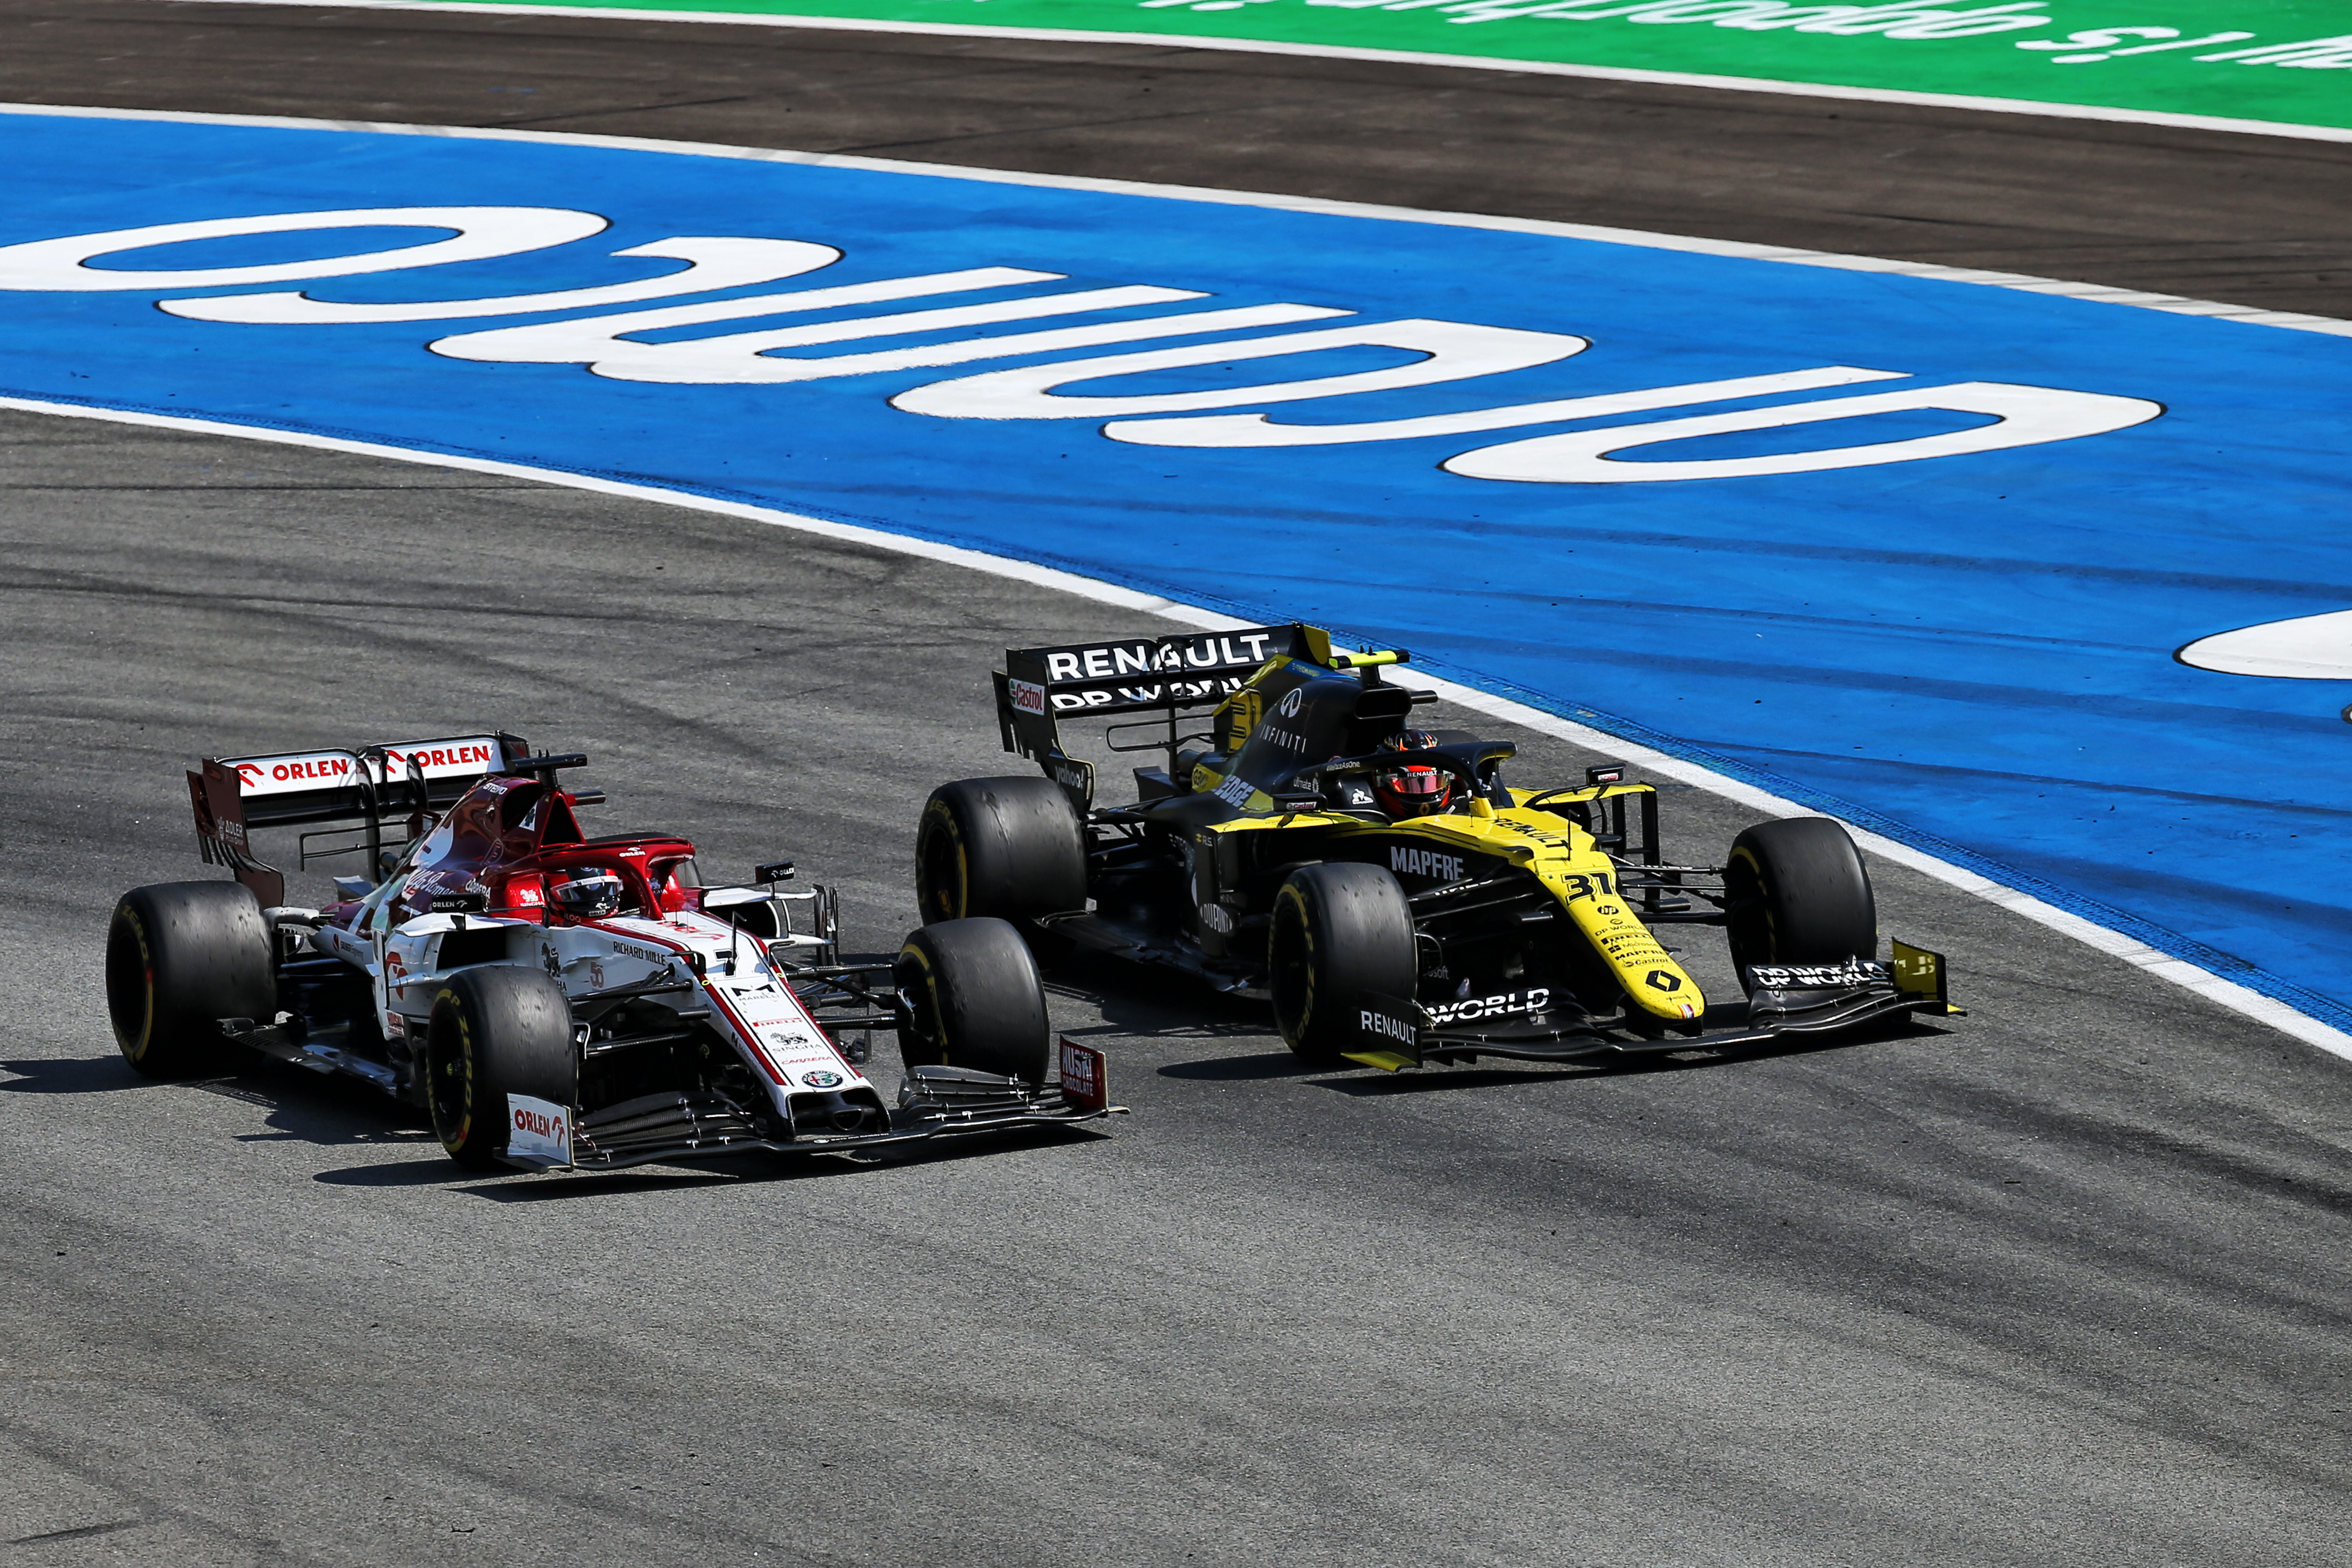 Kimi Raikkonen Esteban Ocon Spanish Grand Prix 2020